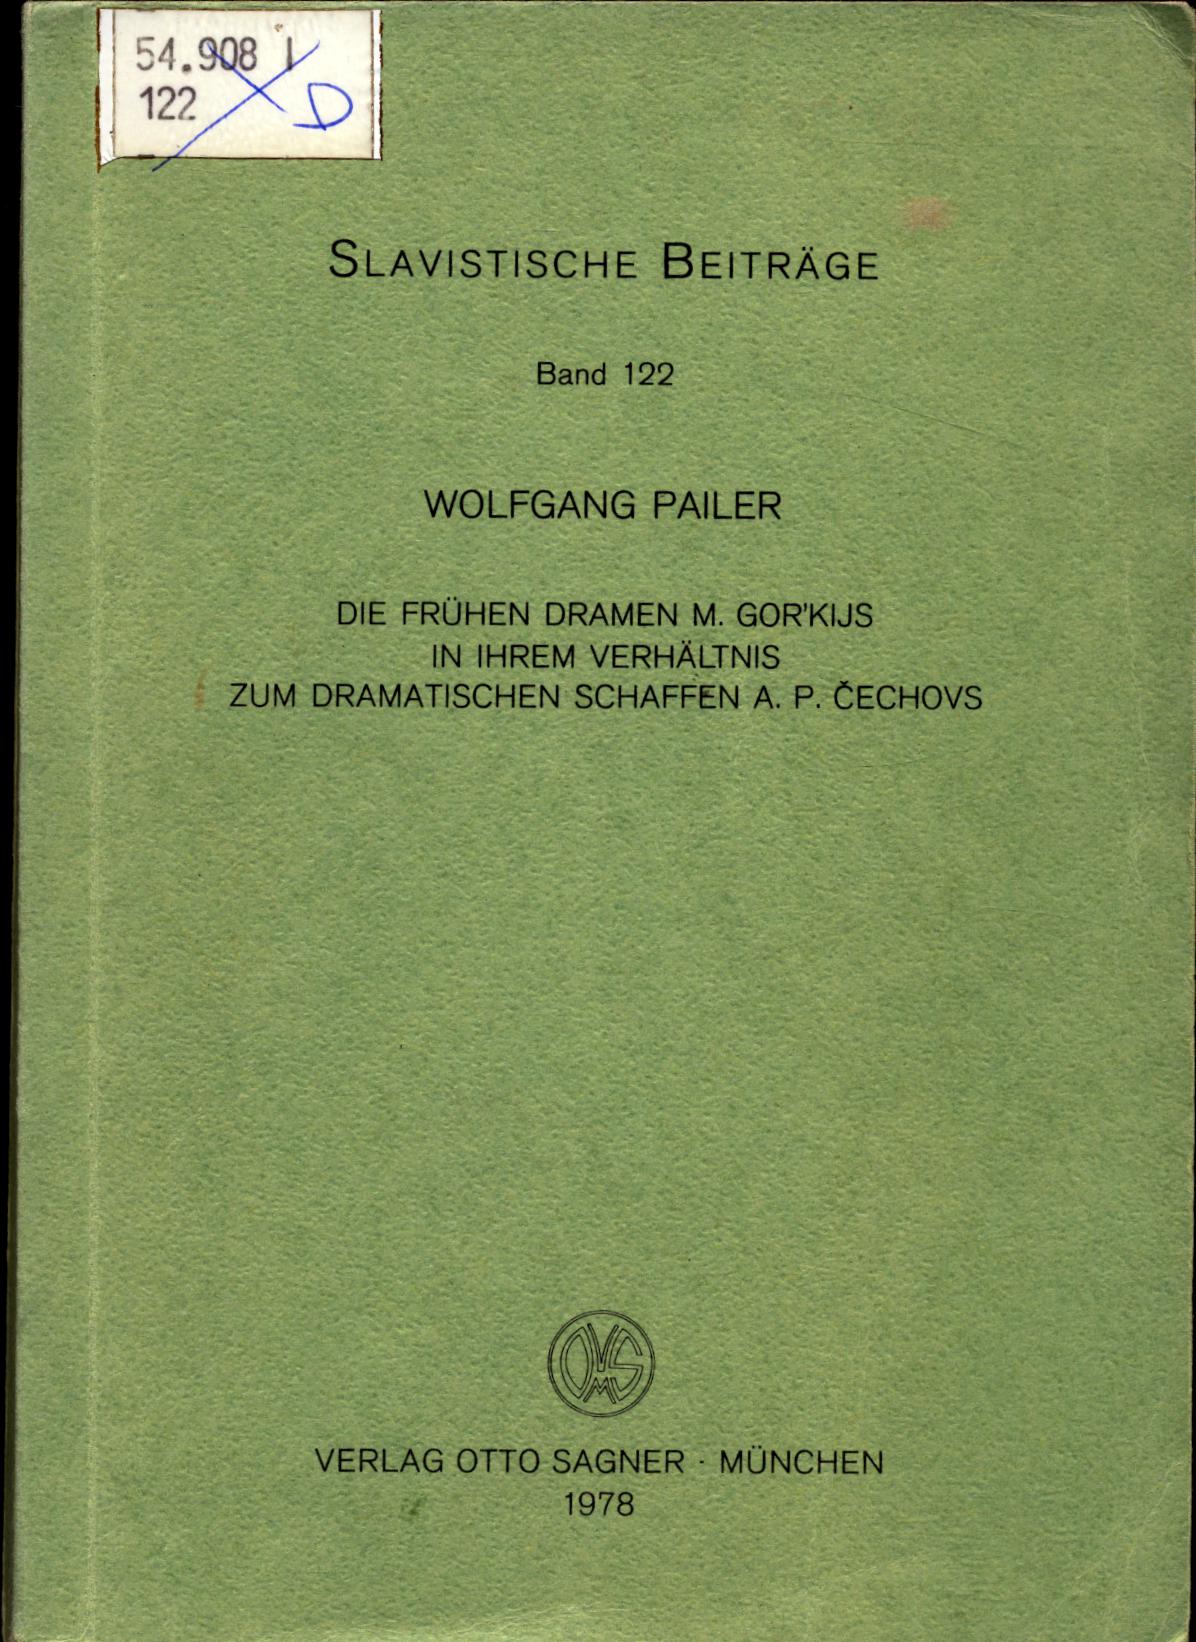 Die frühen Dramen M. Gor'kijs in ihrem Verhältnis zum dramatischen Schaffen A. P. Cechovs - Pailer, Wolfgang